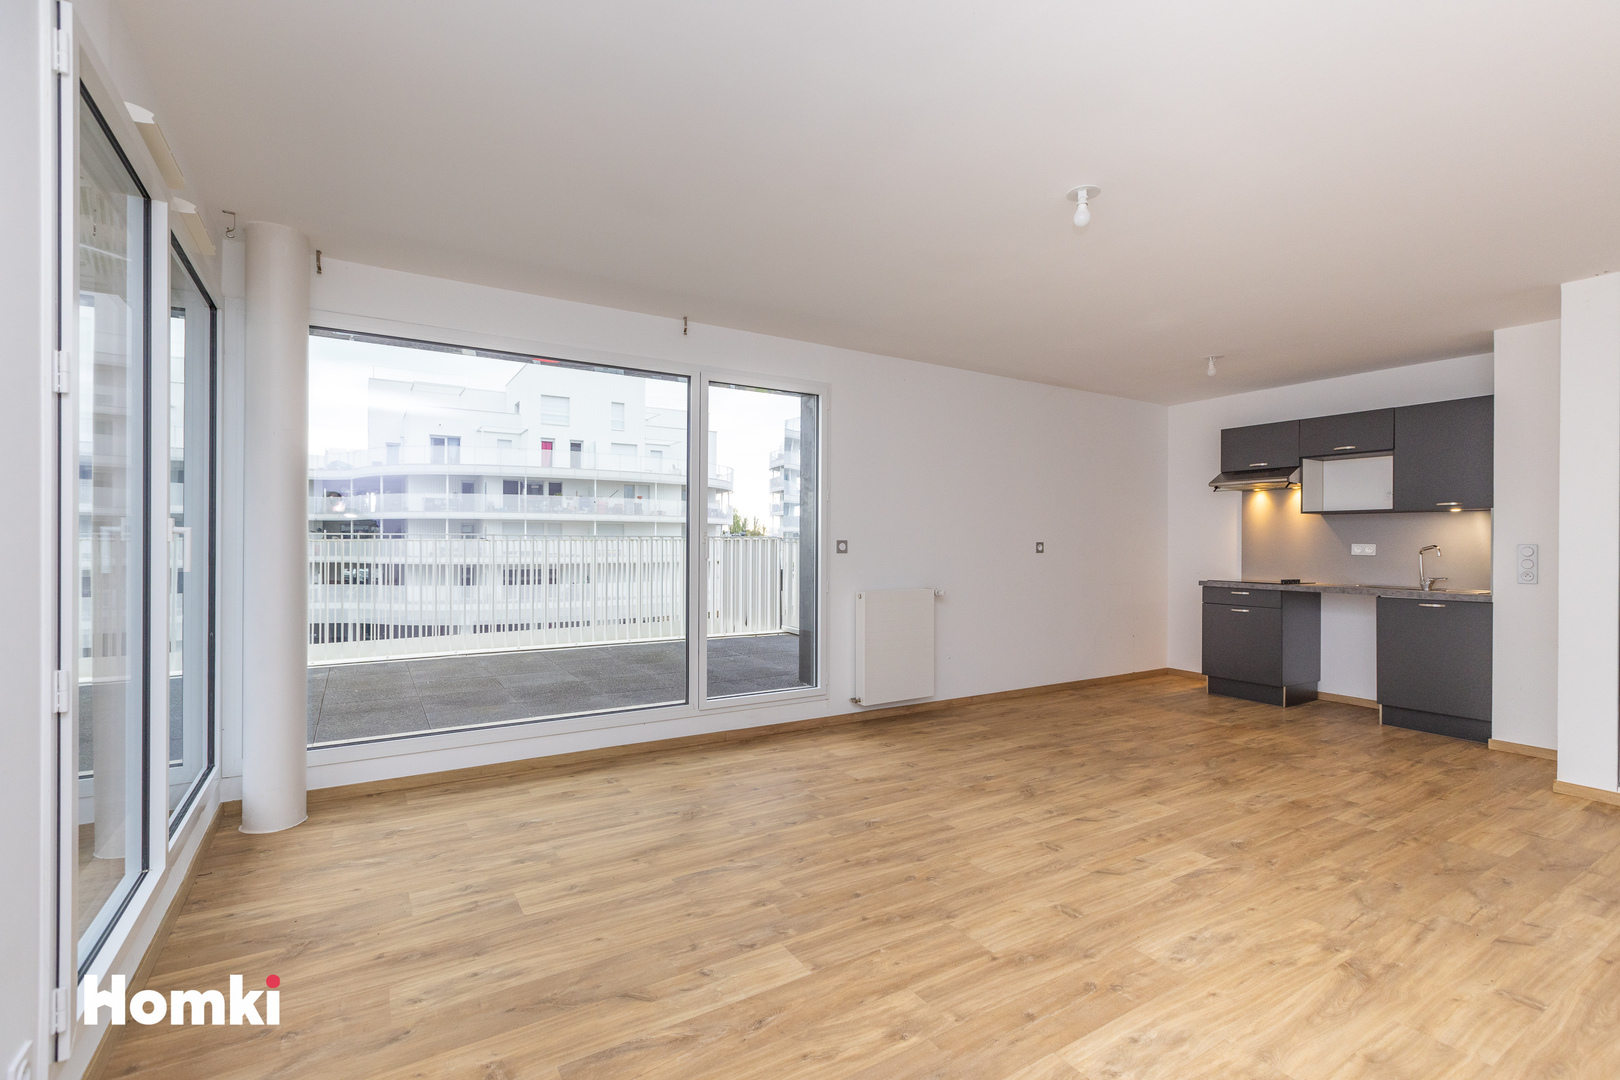 Homki - Vente Appartement  de 65.0 m² à Cesson-Sévigné 35510